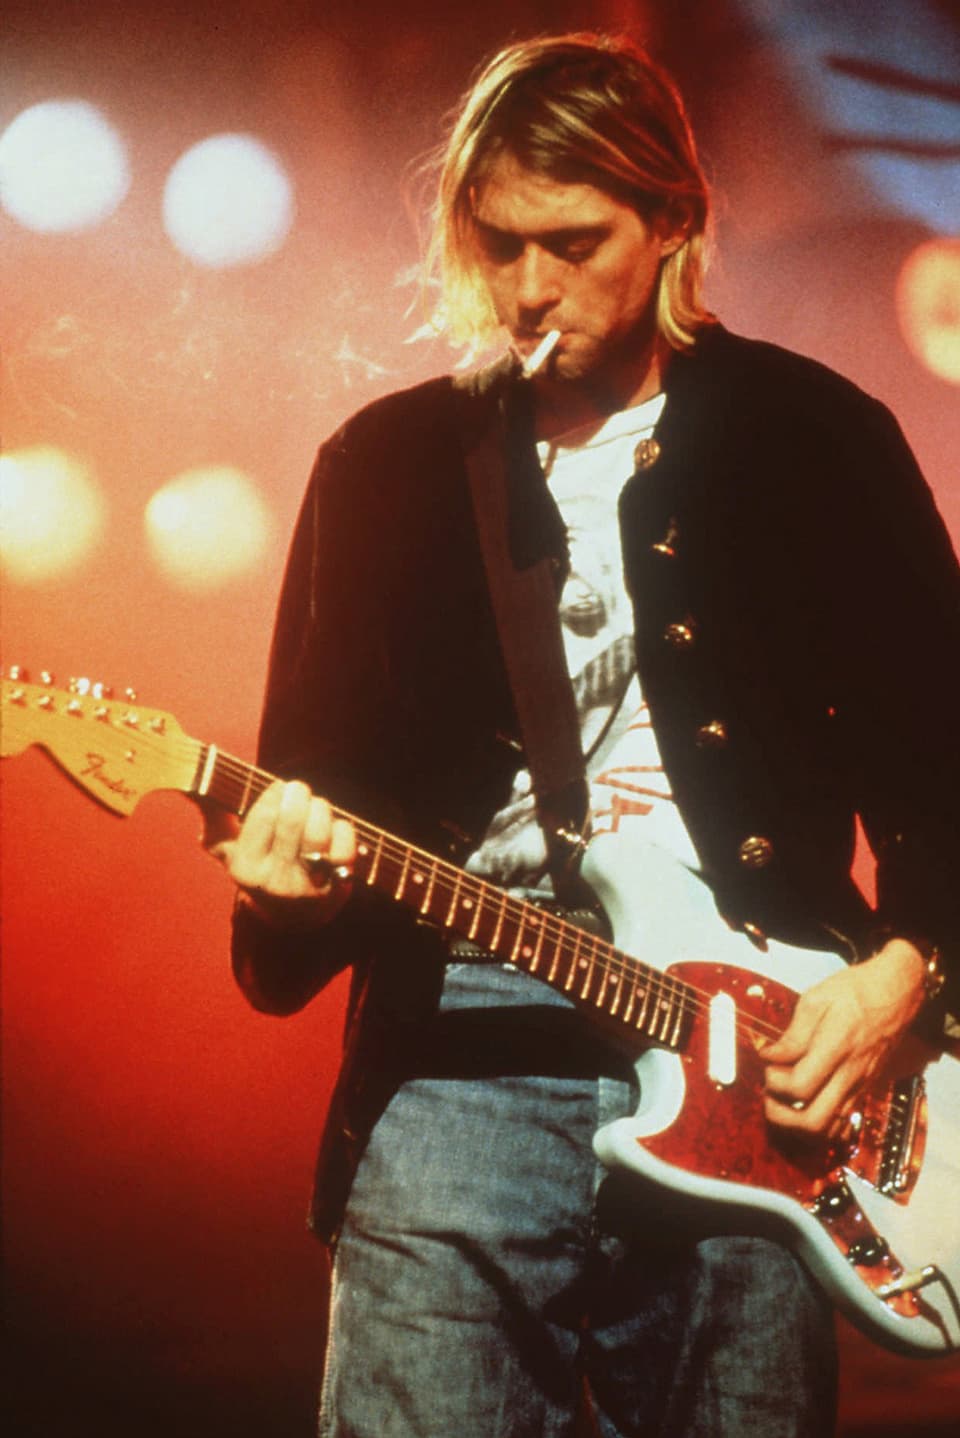 Zu sehen ist der Frontman der Grungeband Nirvana, Kurt Cobain. Er spielt Gitarre und hat eine Zigarette im Mund.